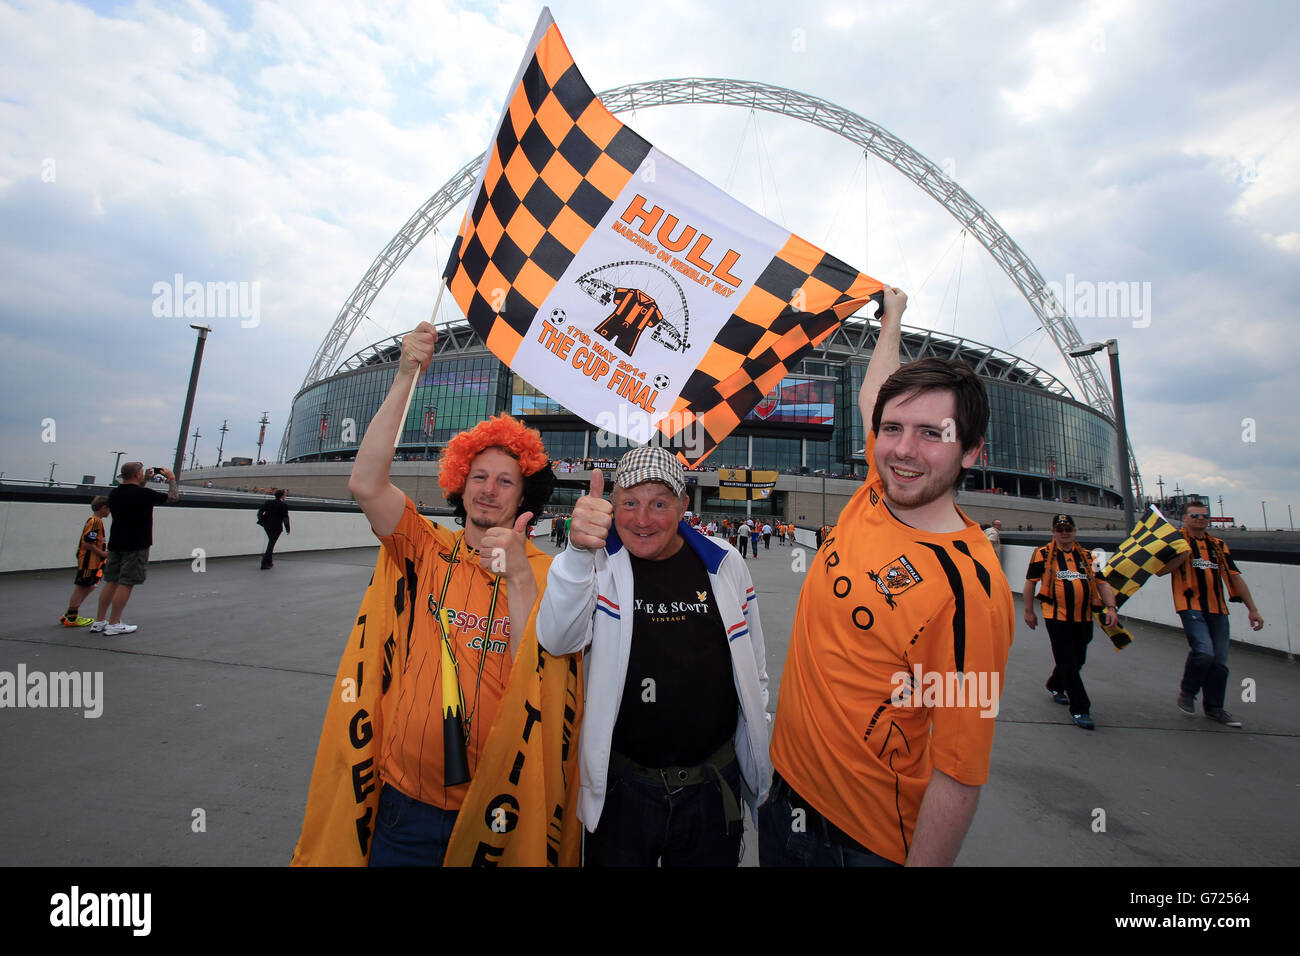 Les supporters de Hull City sur Wembley Way avant la finale de la coupe FA au stade Wembley, Londres. Banque D'Images